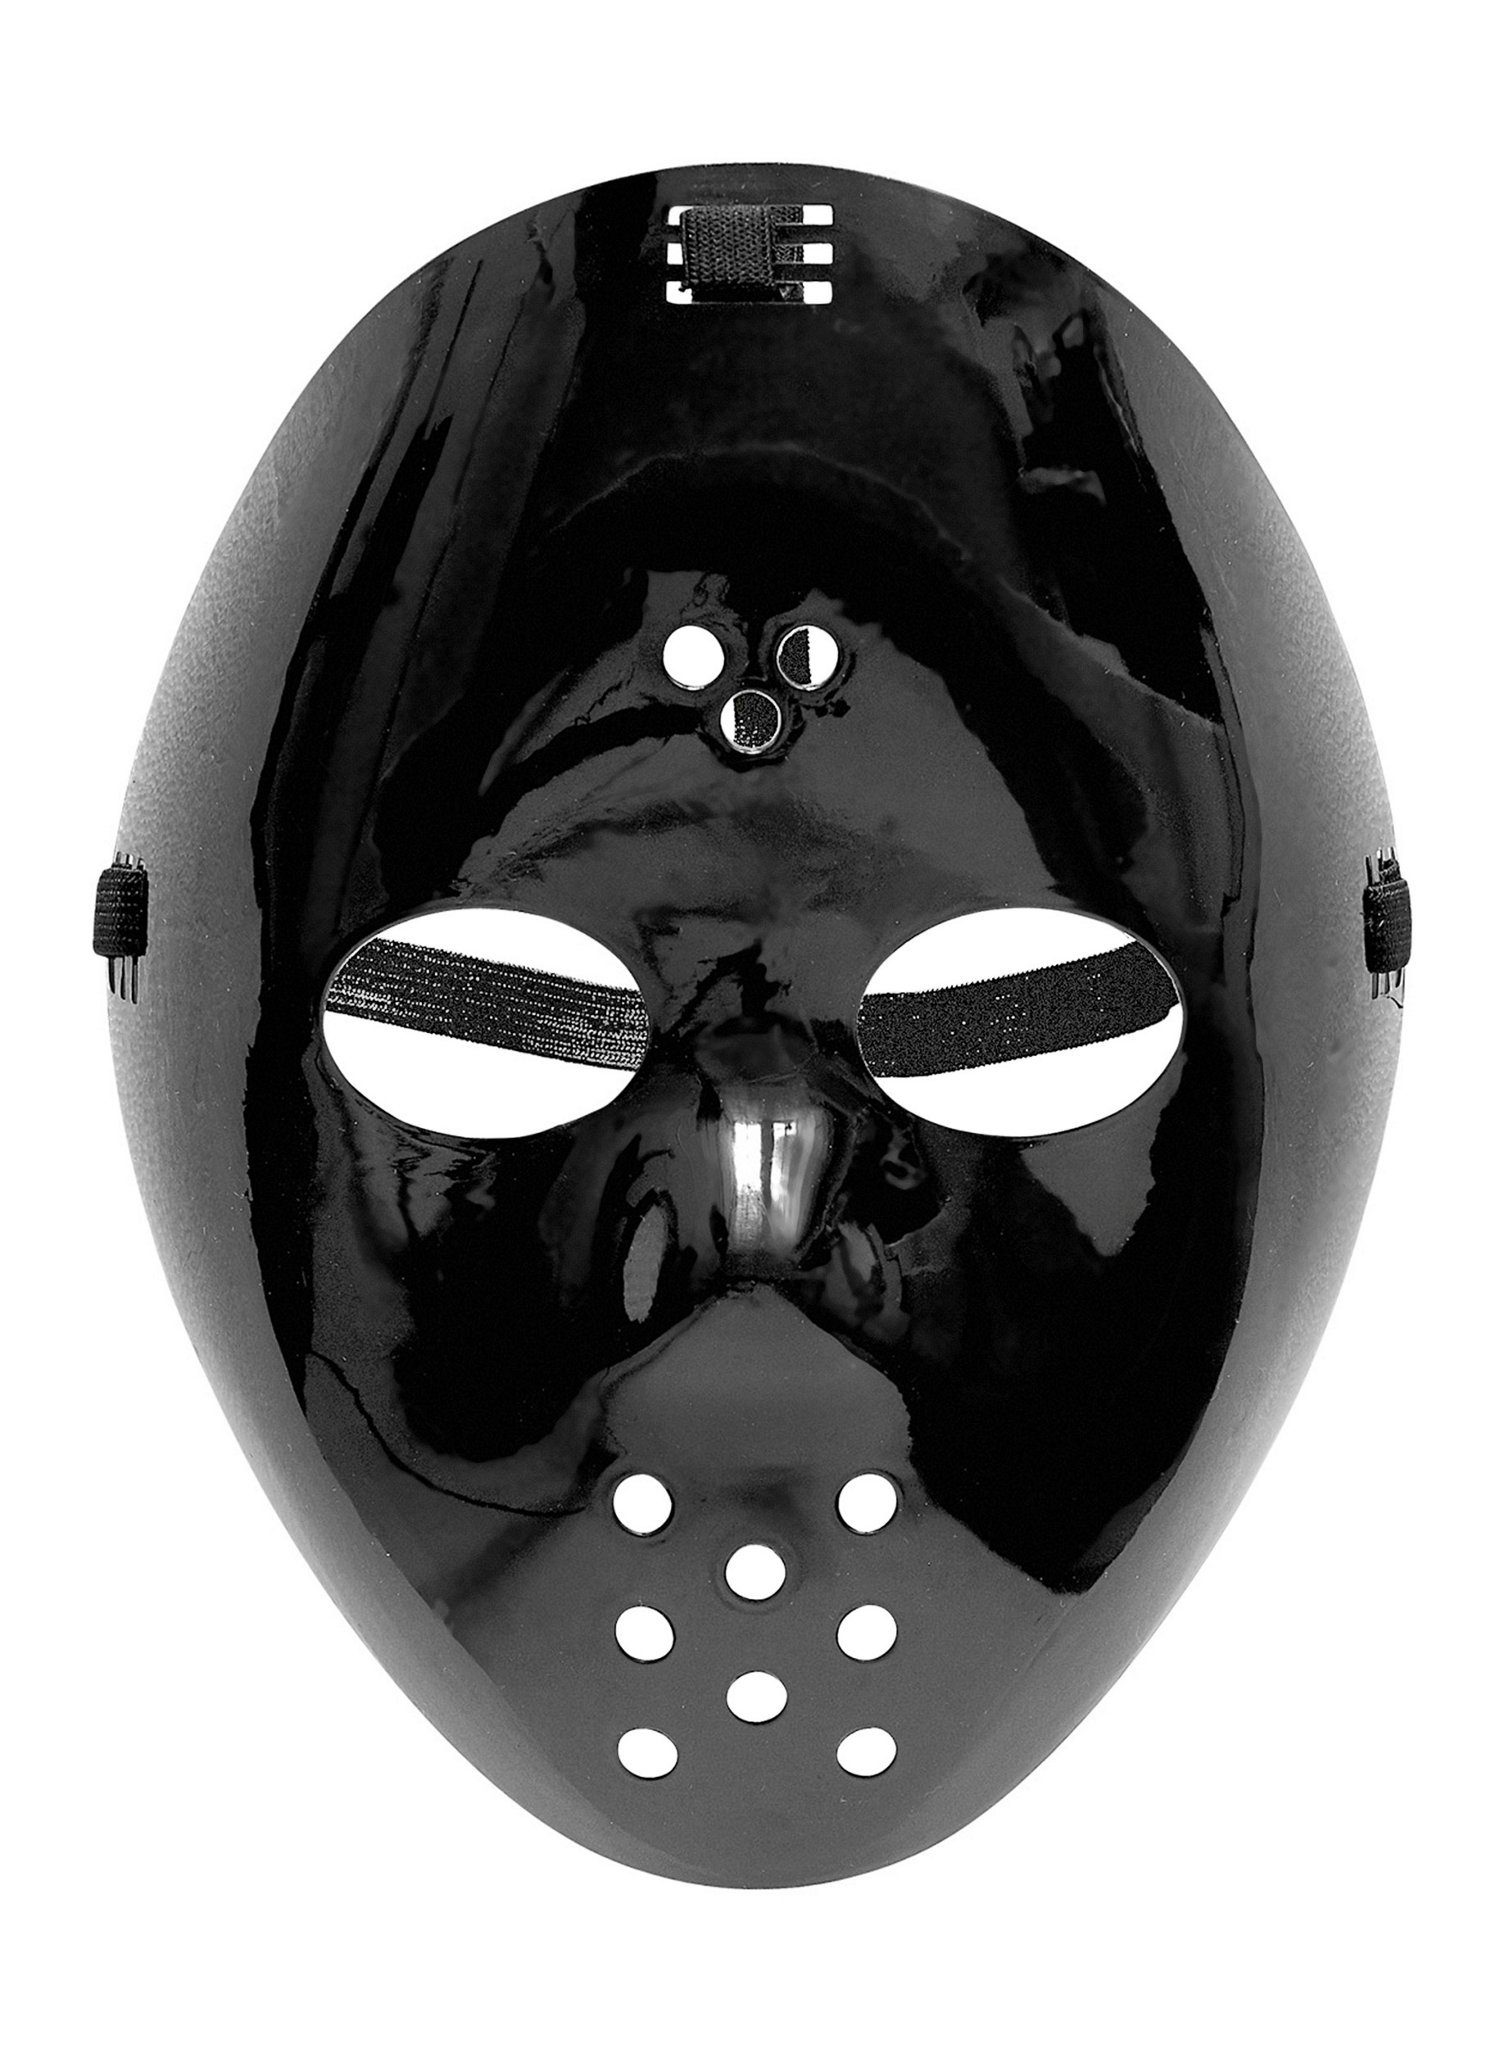 Widdmann Verkleidungsmaske Hockeymaske schwarz, Diese Maske kann man hervorragend an einem Freitag, 13. tragen!